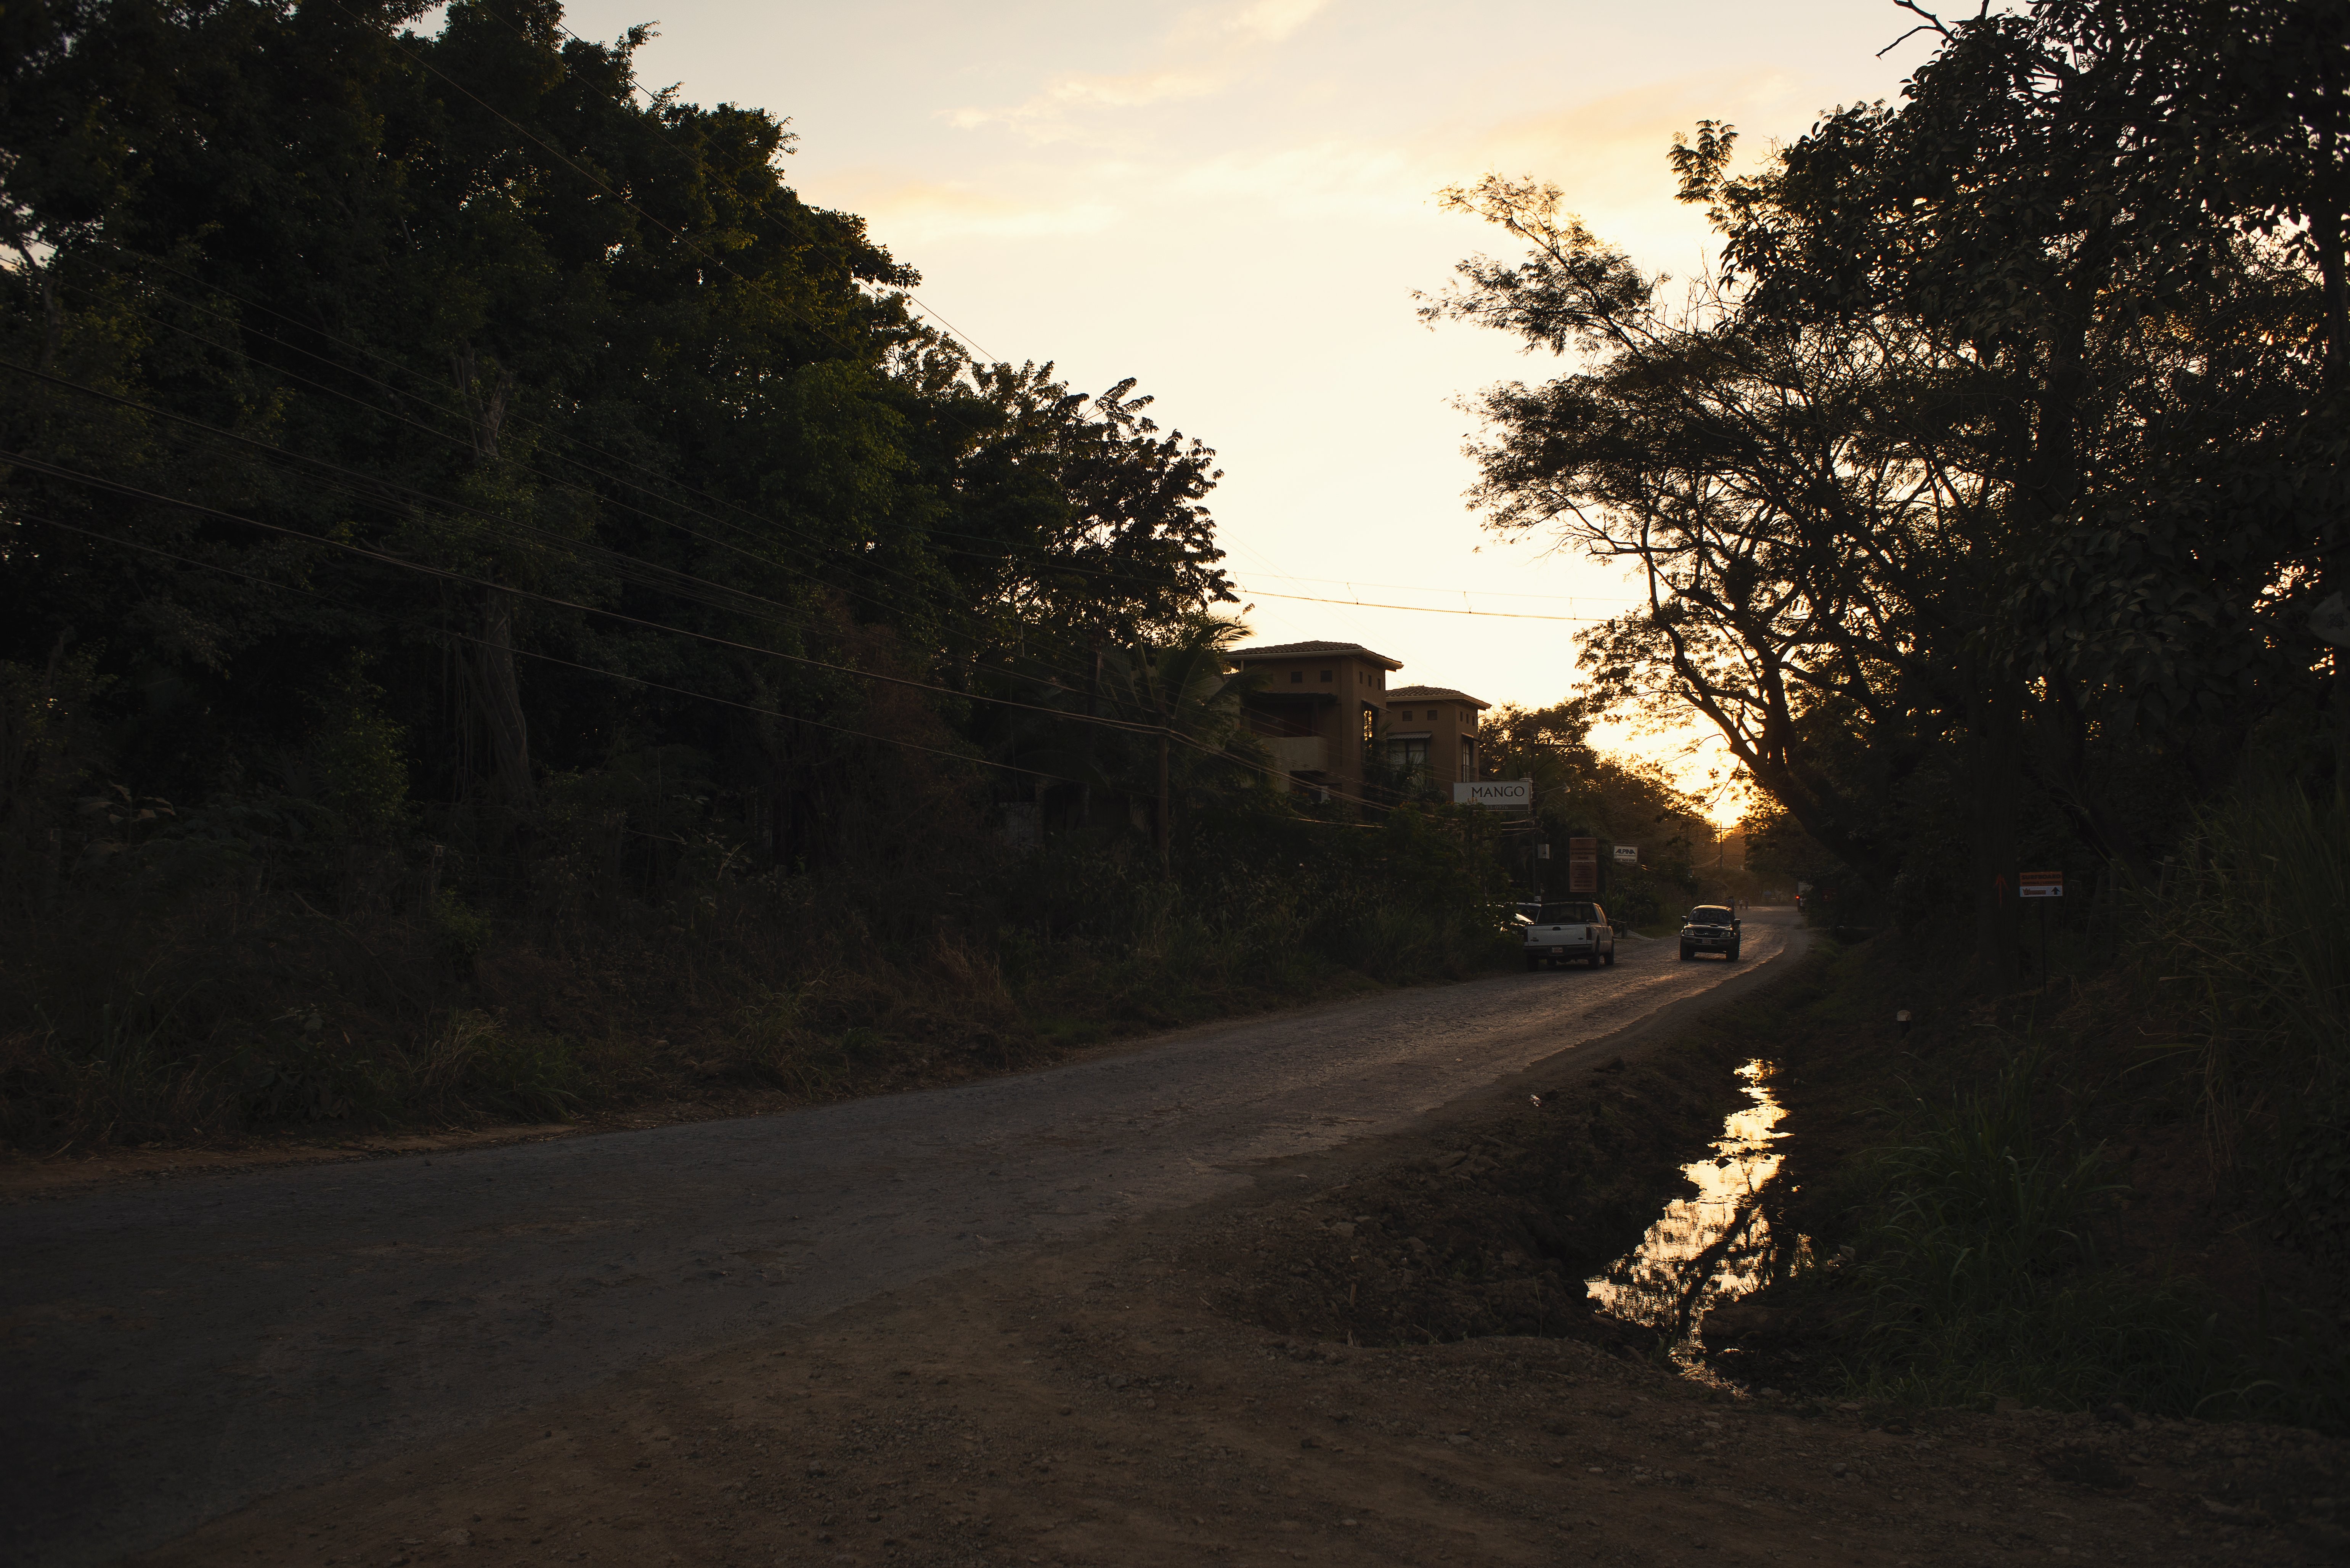 Una strada sterrata al tramonto foto 